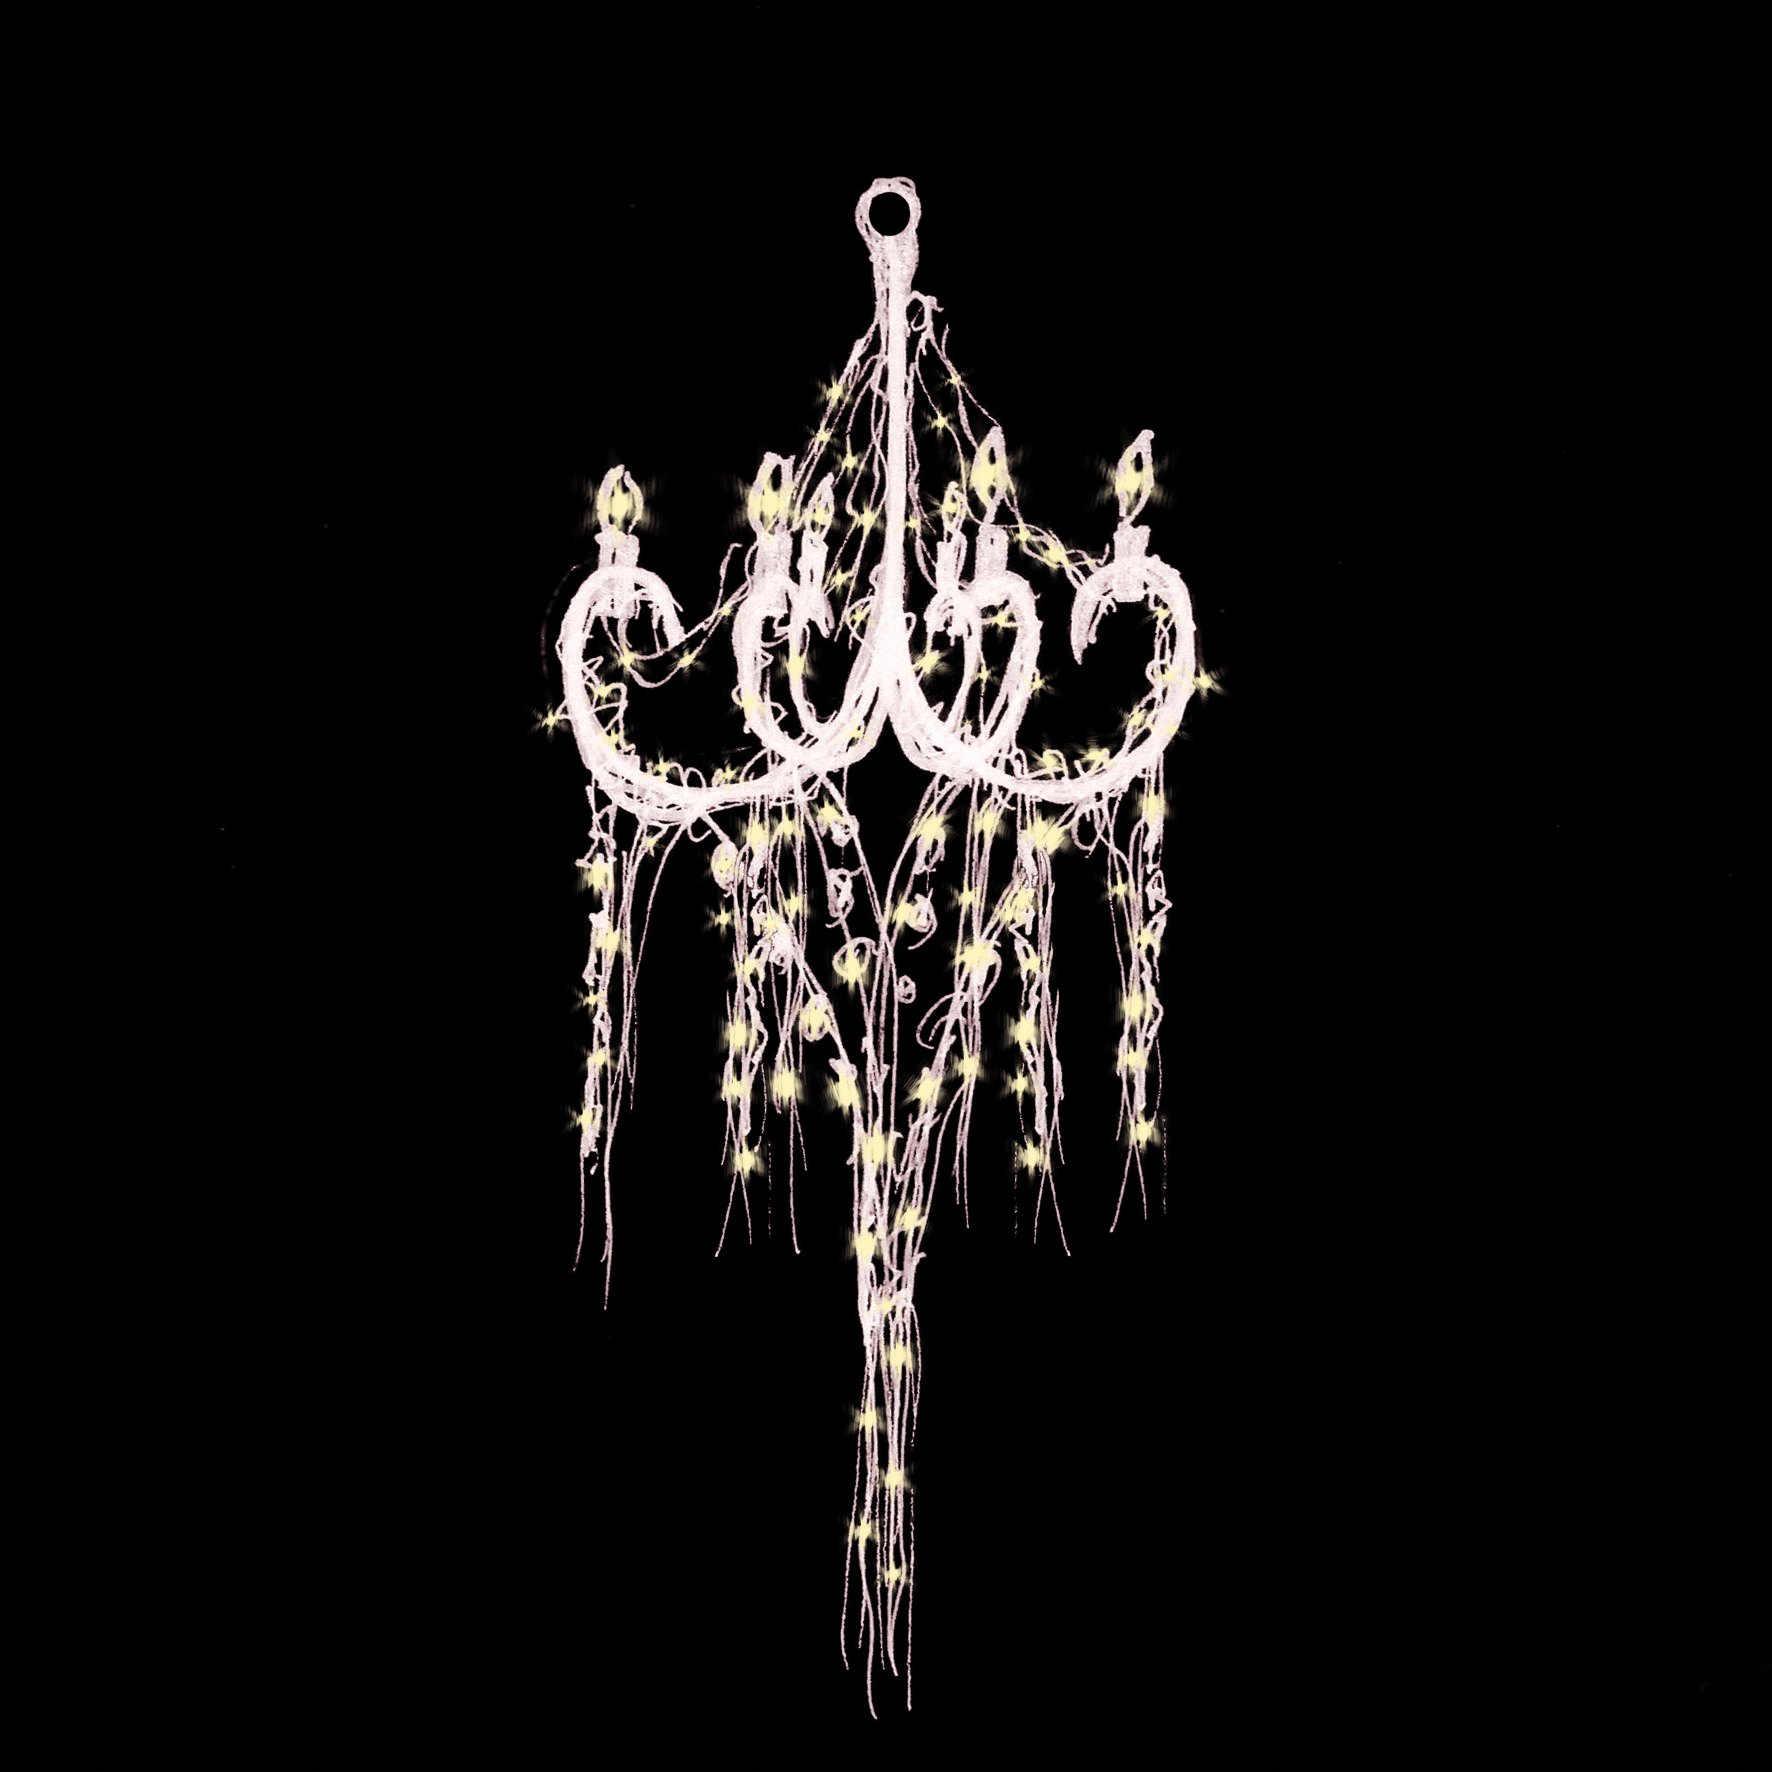 Dessin du lustre-chandelier Open lounge - de nuit - Conception lumière et dessin : Géraud Périole